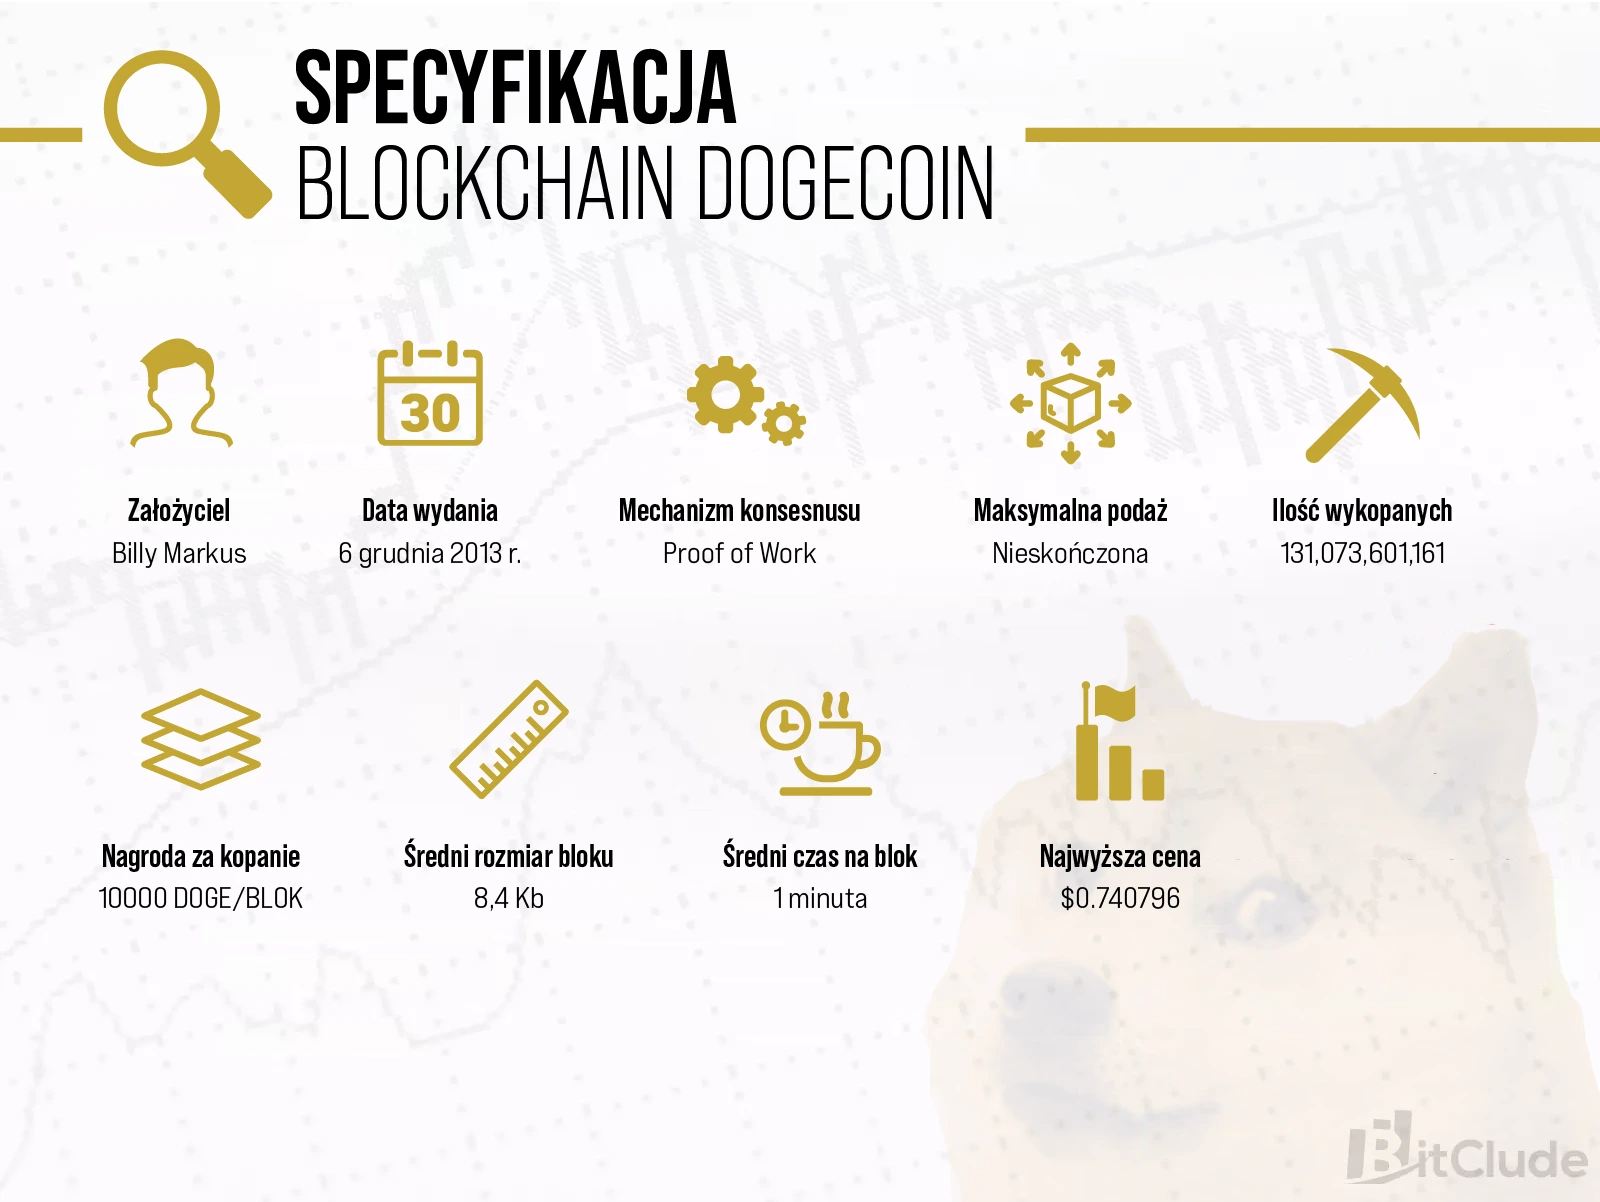 Dogecoin powstał w 2013 rok. Swój blockchain i zasadę działania opiera o Litecoina, ale jego podaż jest nieograniczona.